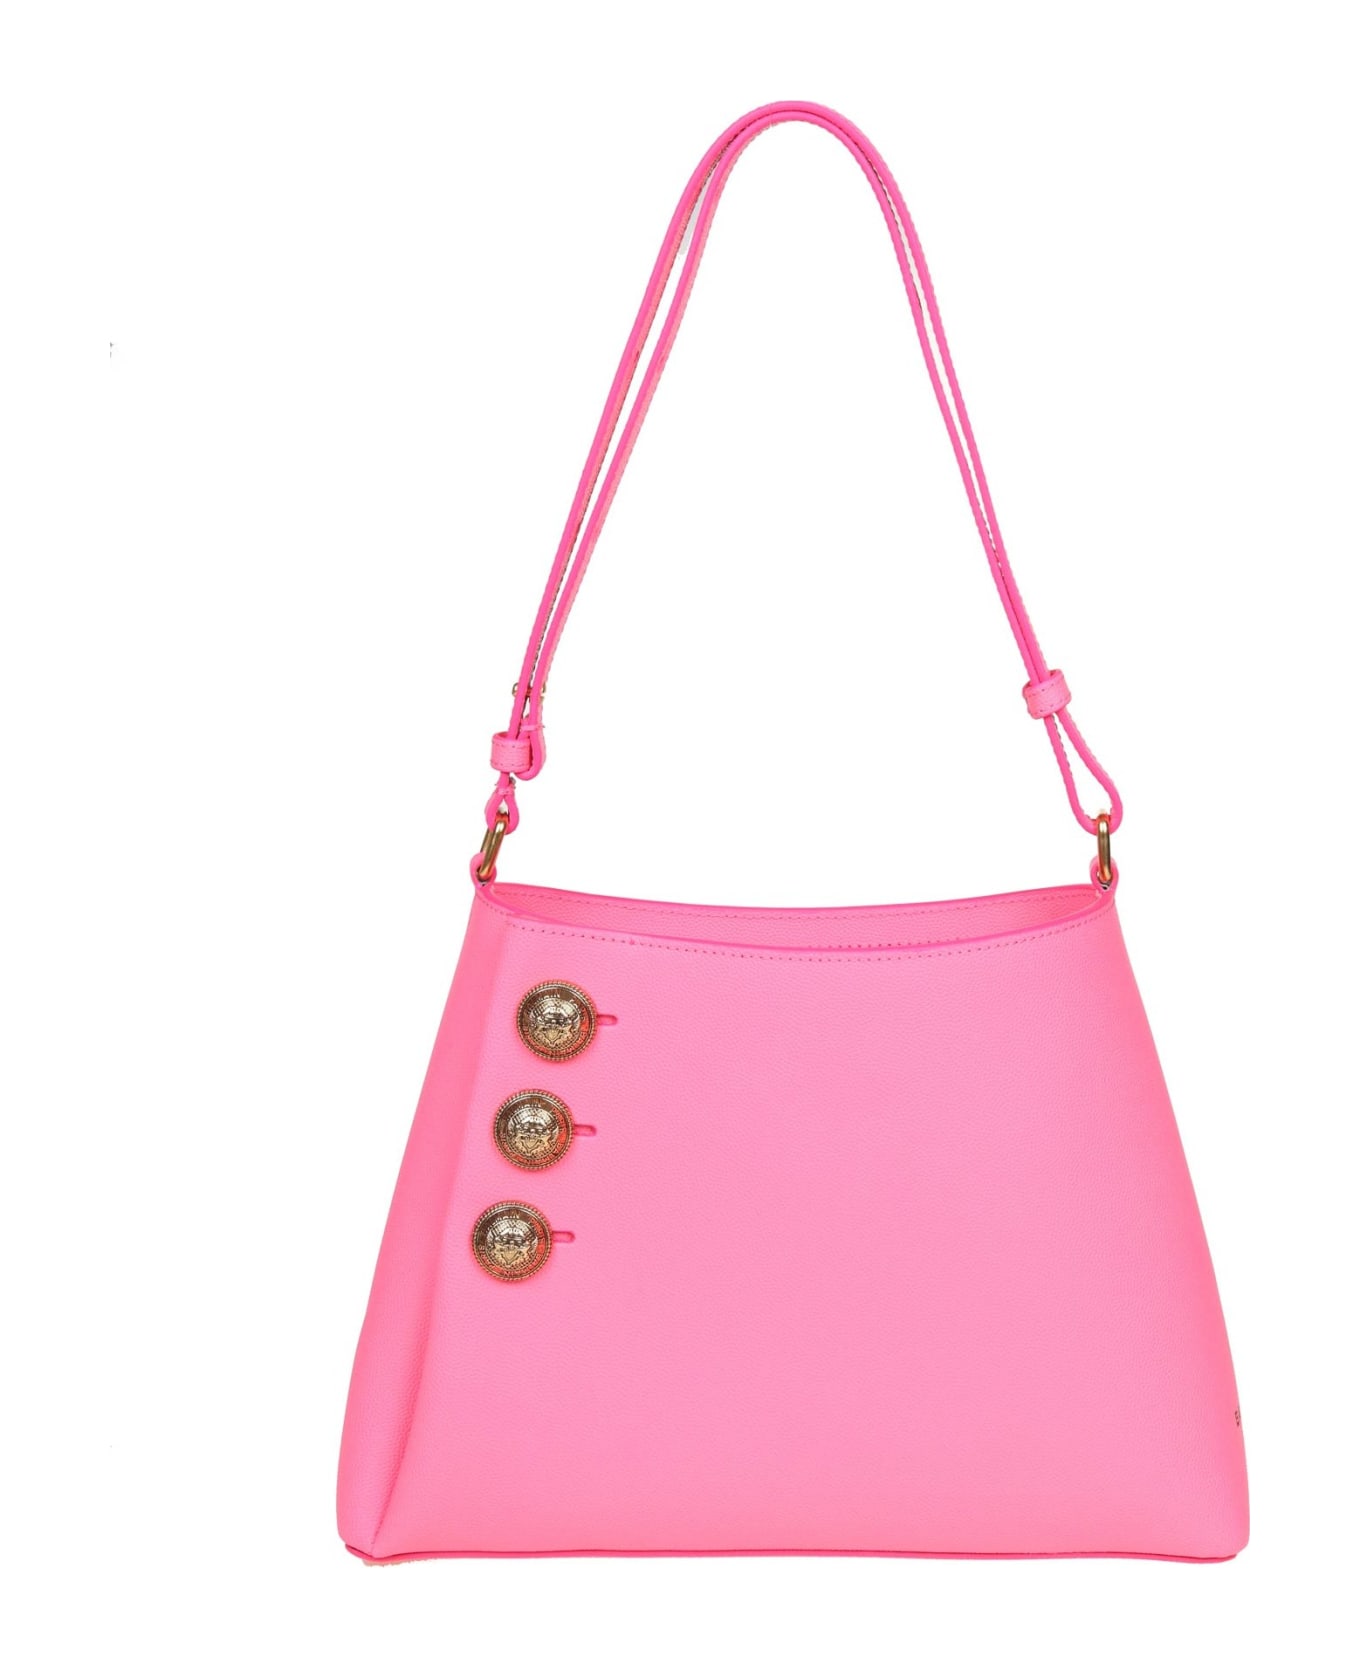 Balmain Emblem Shoulder Bag In Pink Leather - Bubblegum